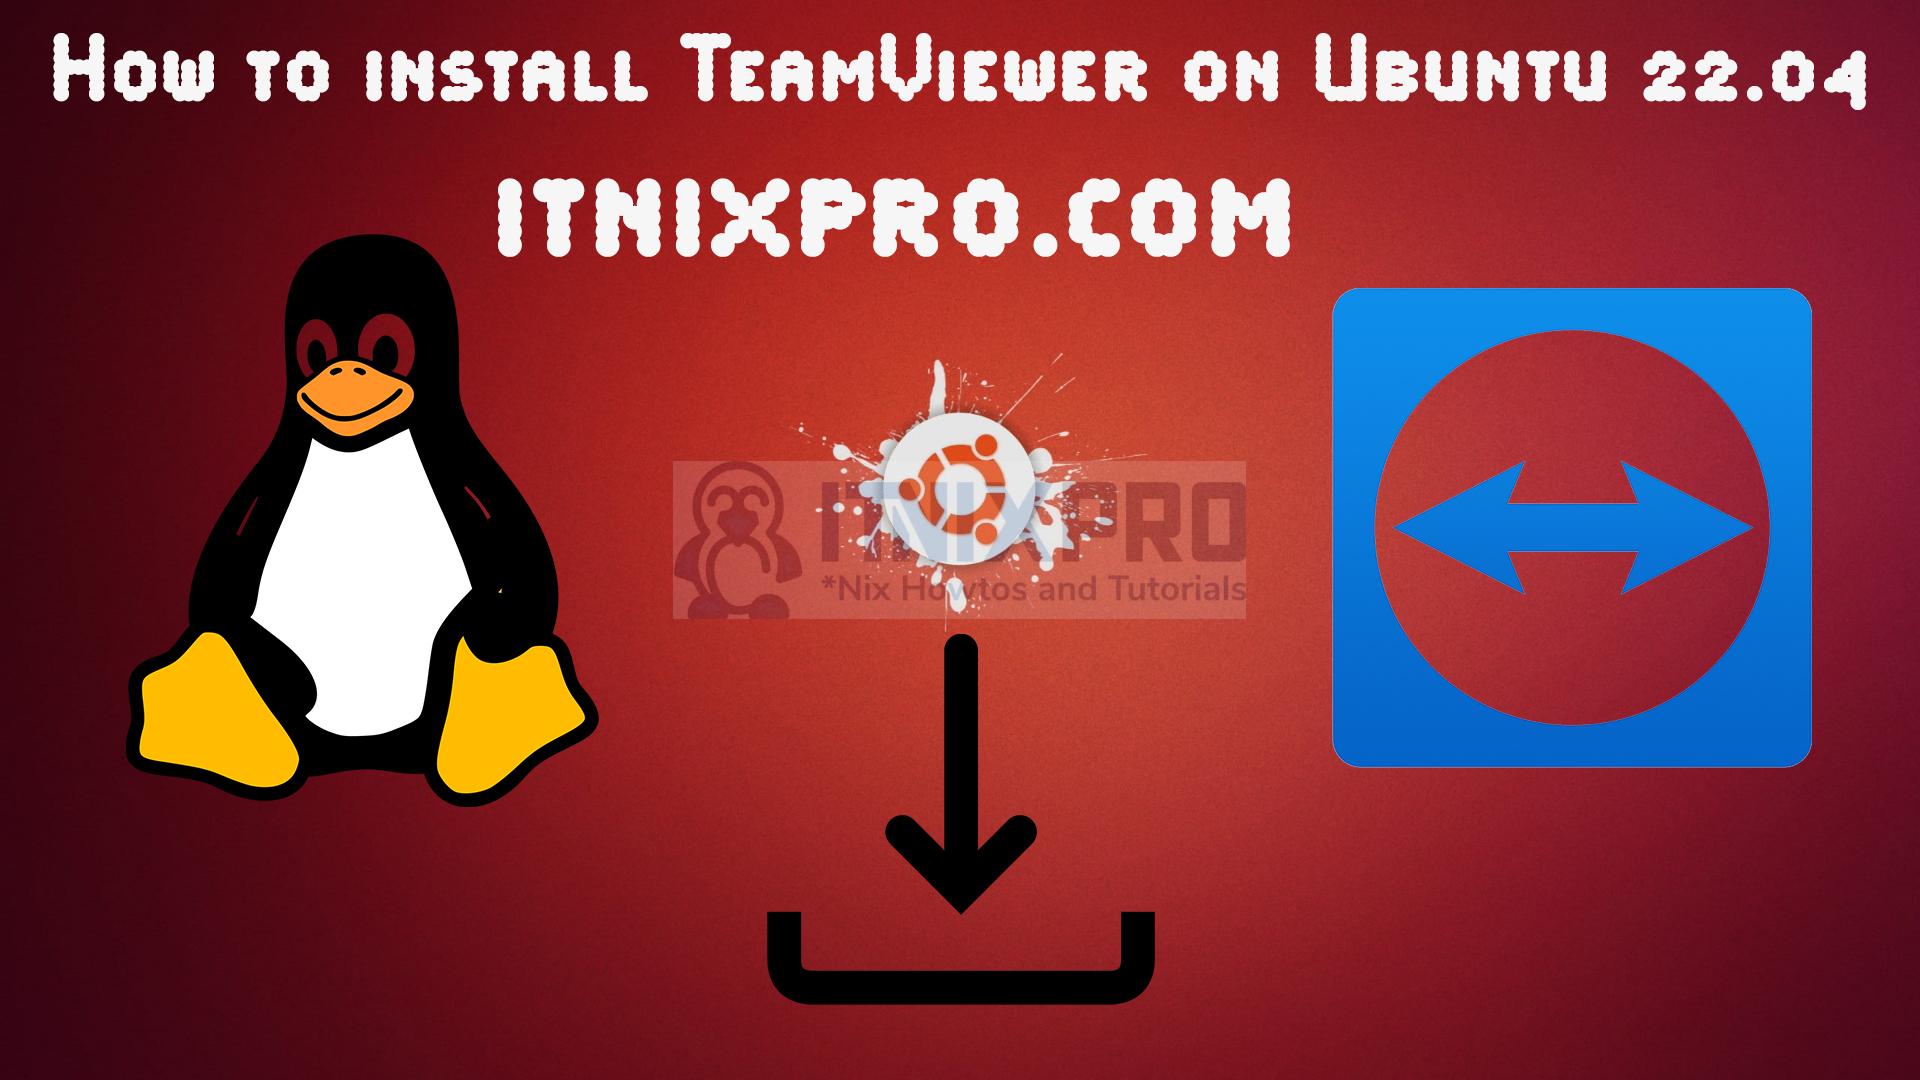 teamviewer download ubuntu 22.04